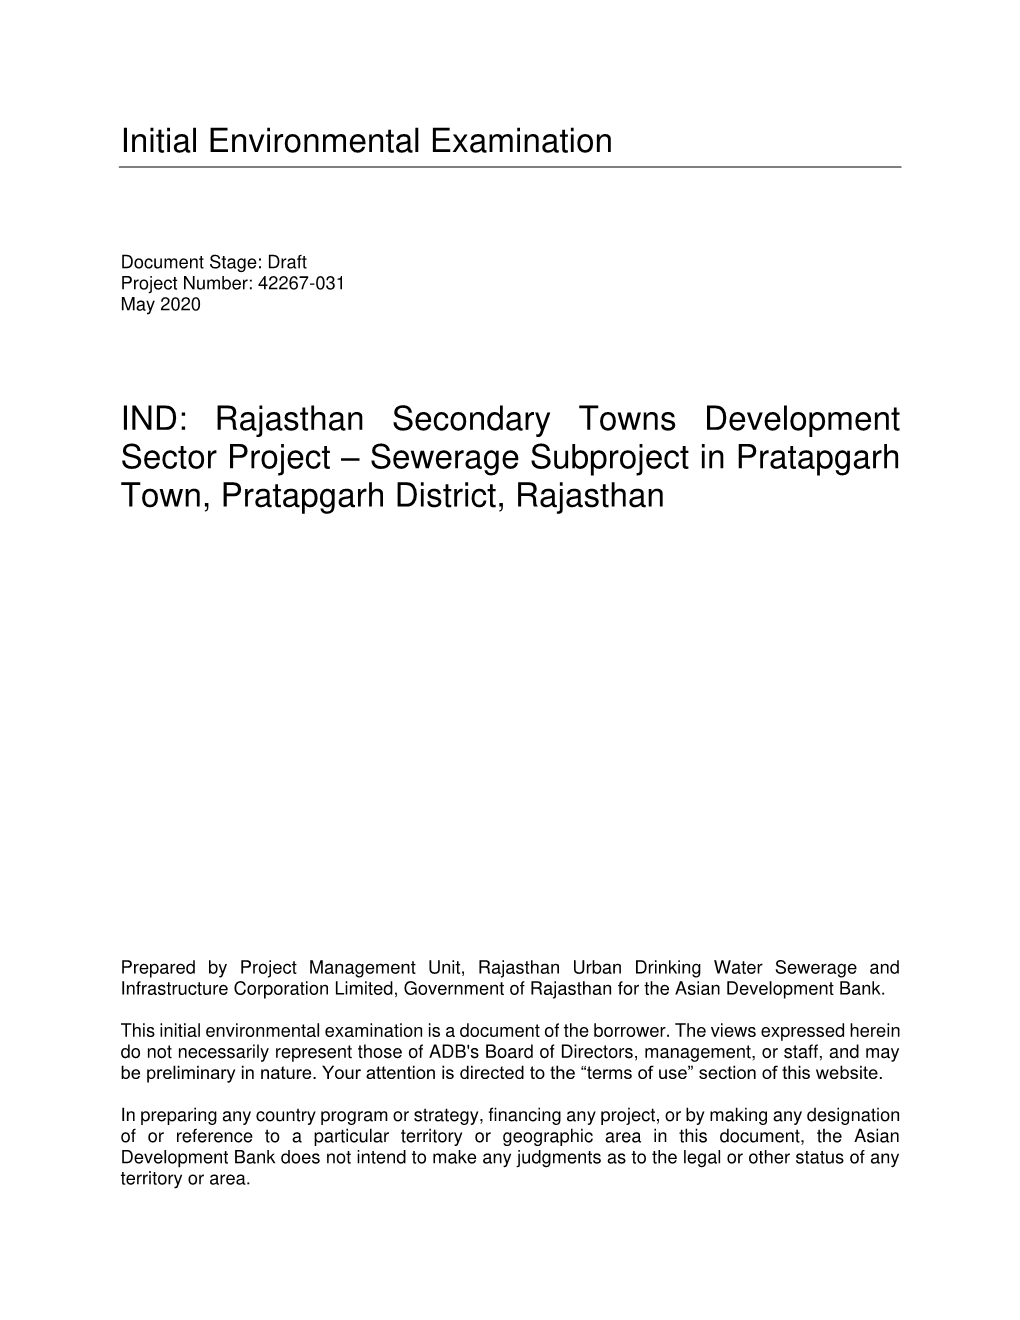 42267-026: Bhilwara Sewerage Subproject Draft Initial